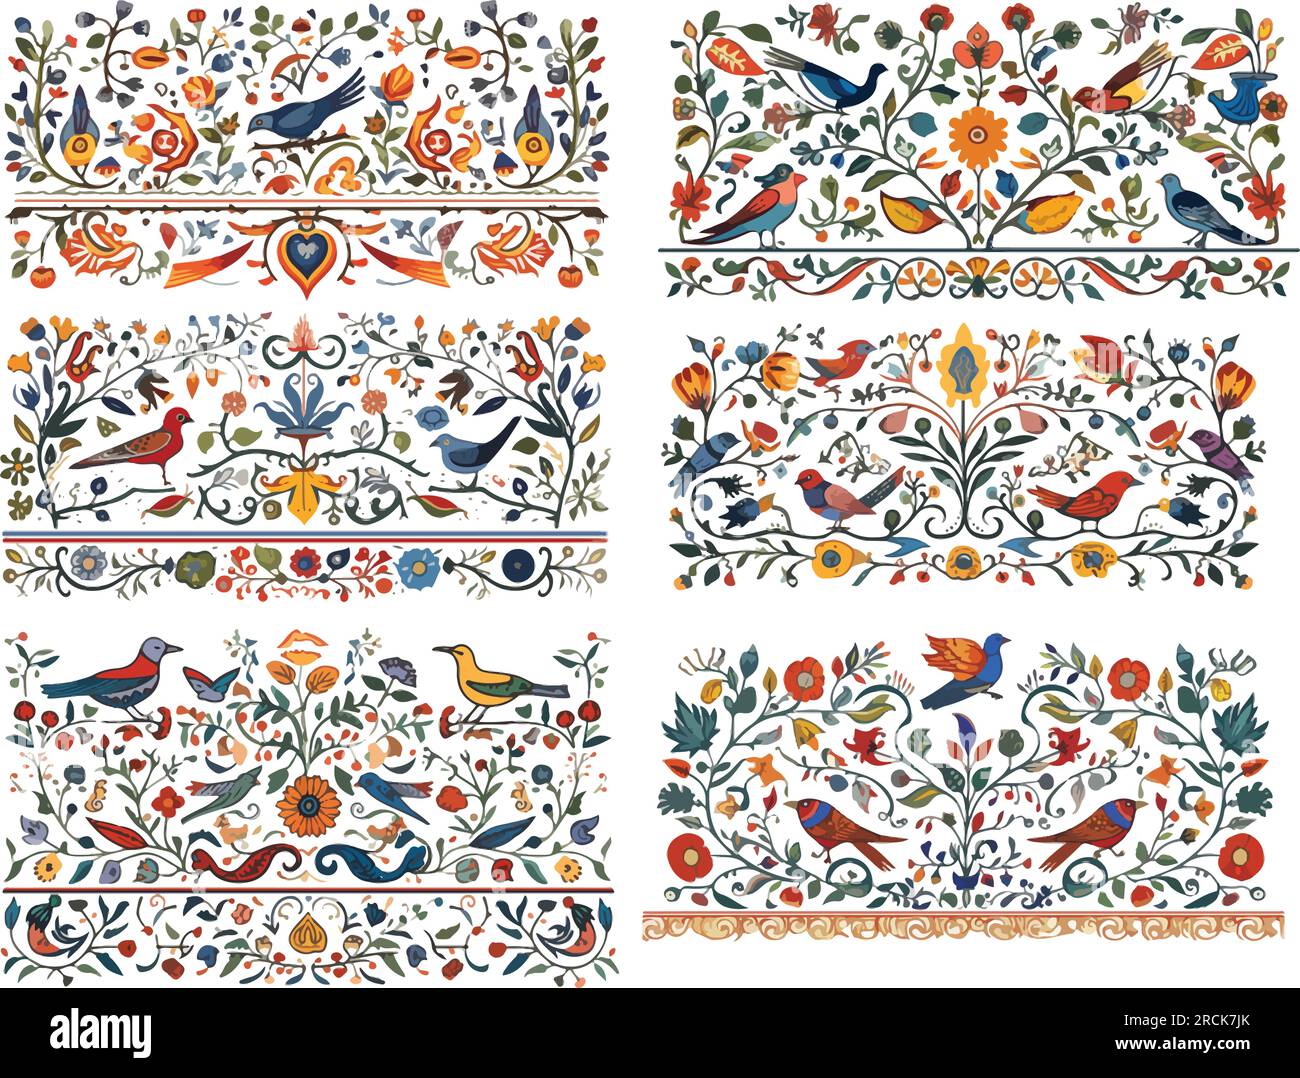 Conjunto de seis elementos de diseño vectorial con aves, vides y flores, estilo medieval iluminado Ilustración del Vector